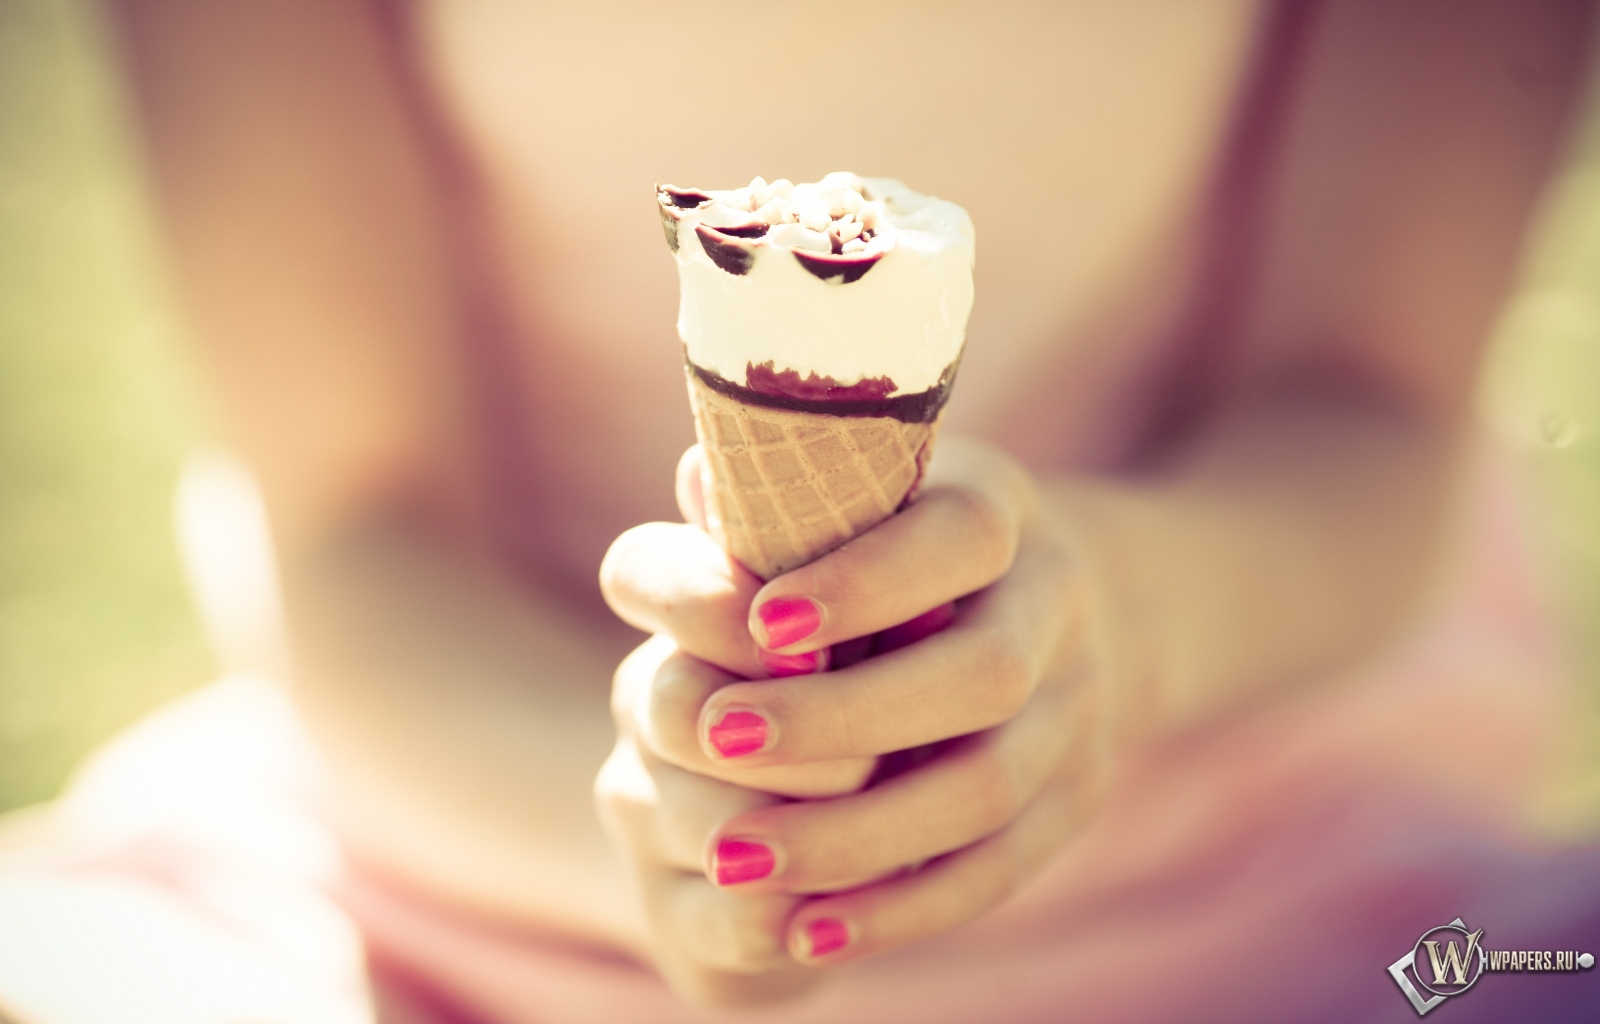 Шоколадное мороженое 1600x1024